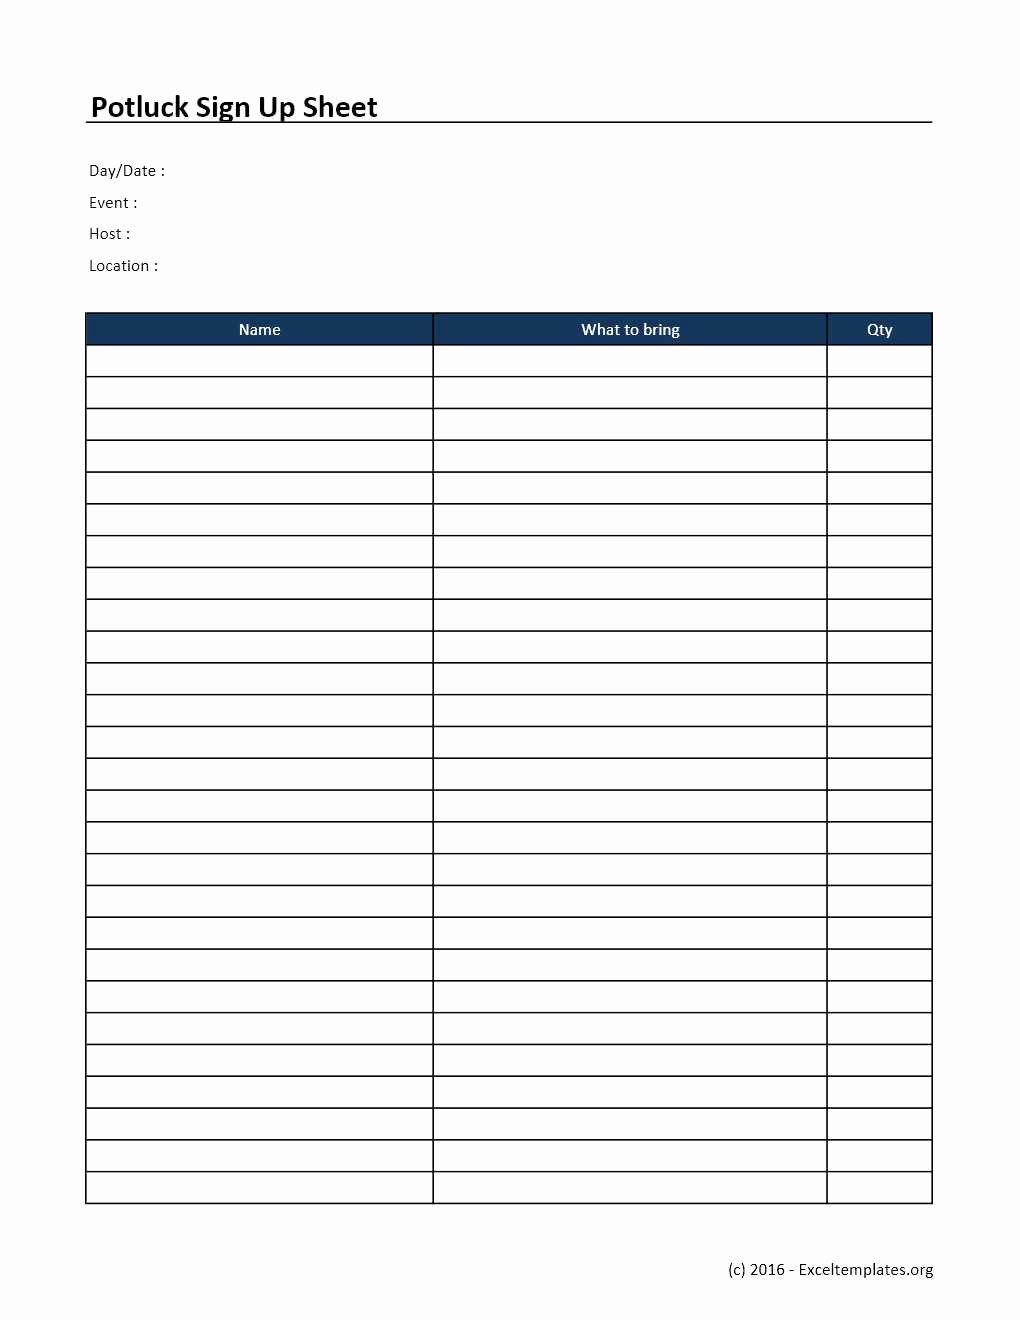 Sign Up Sheet Template Excel Elegant Potluck Sign Up Sheet Template Excel Templates